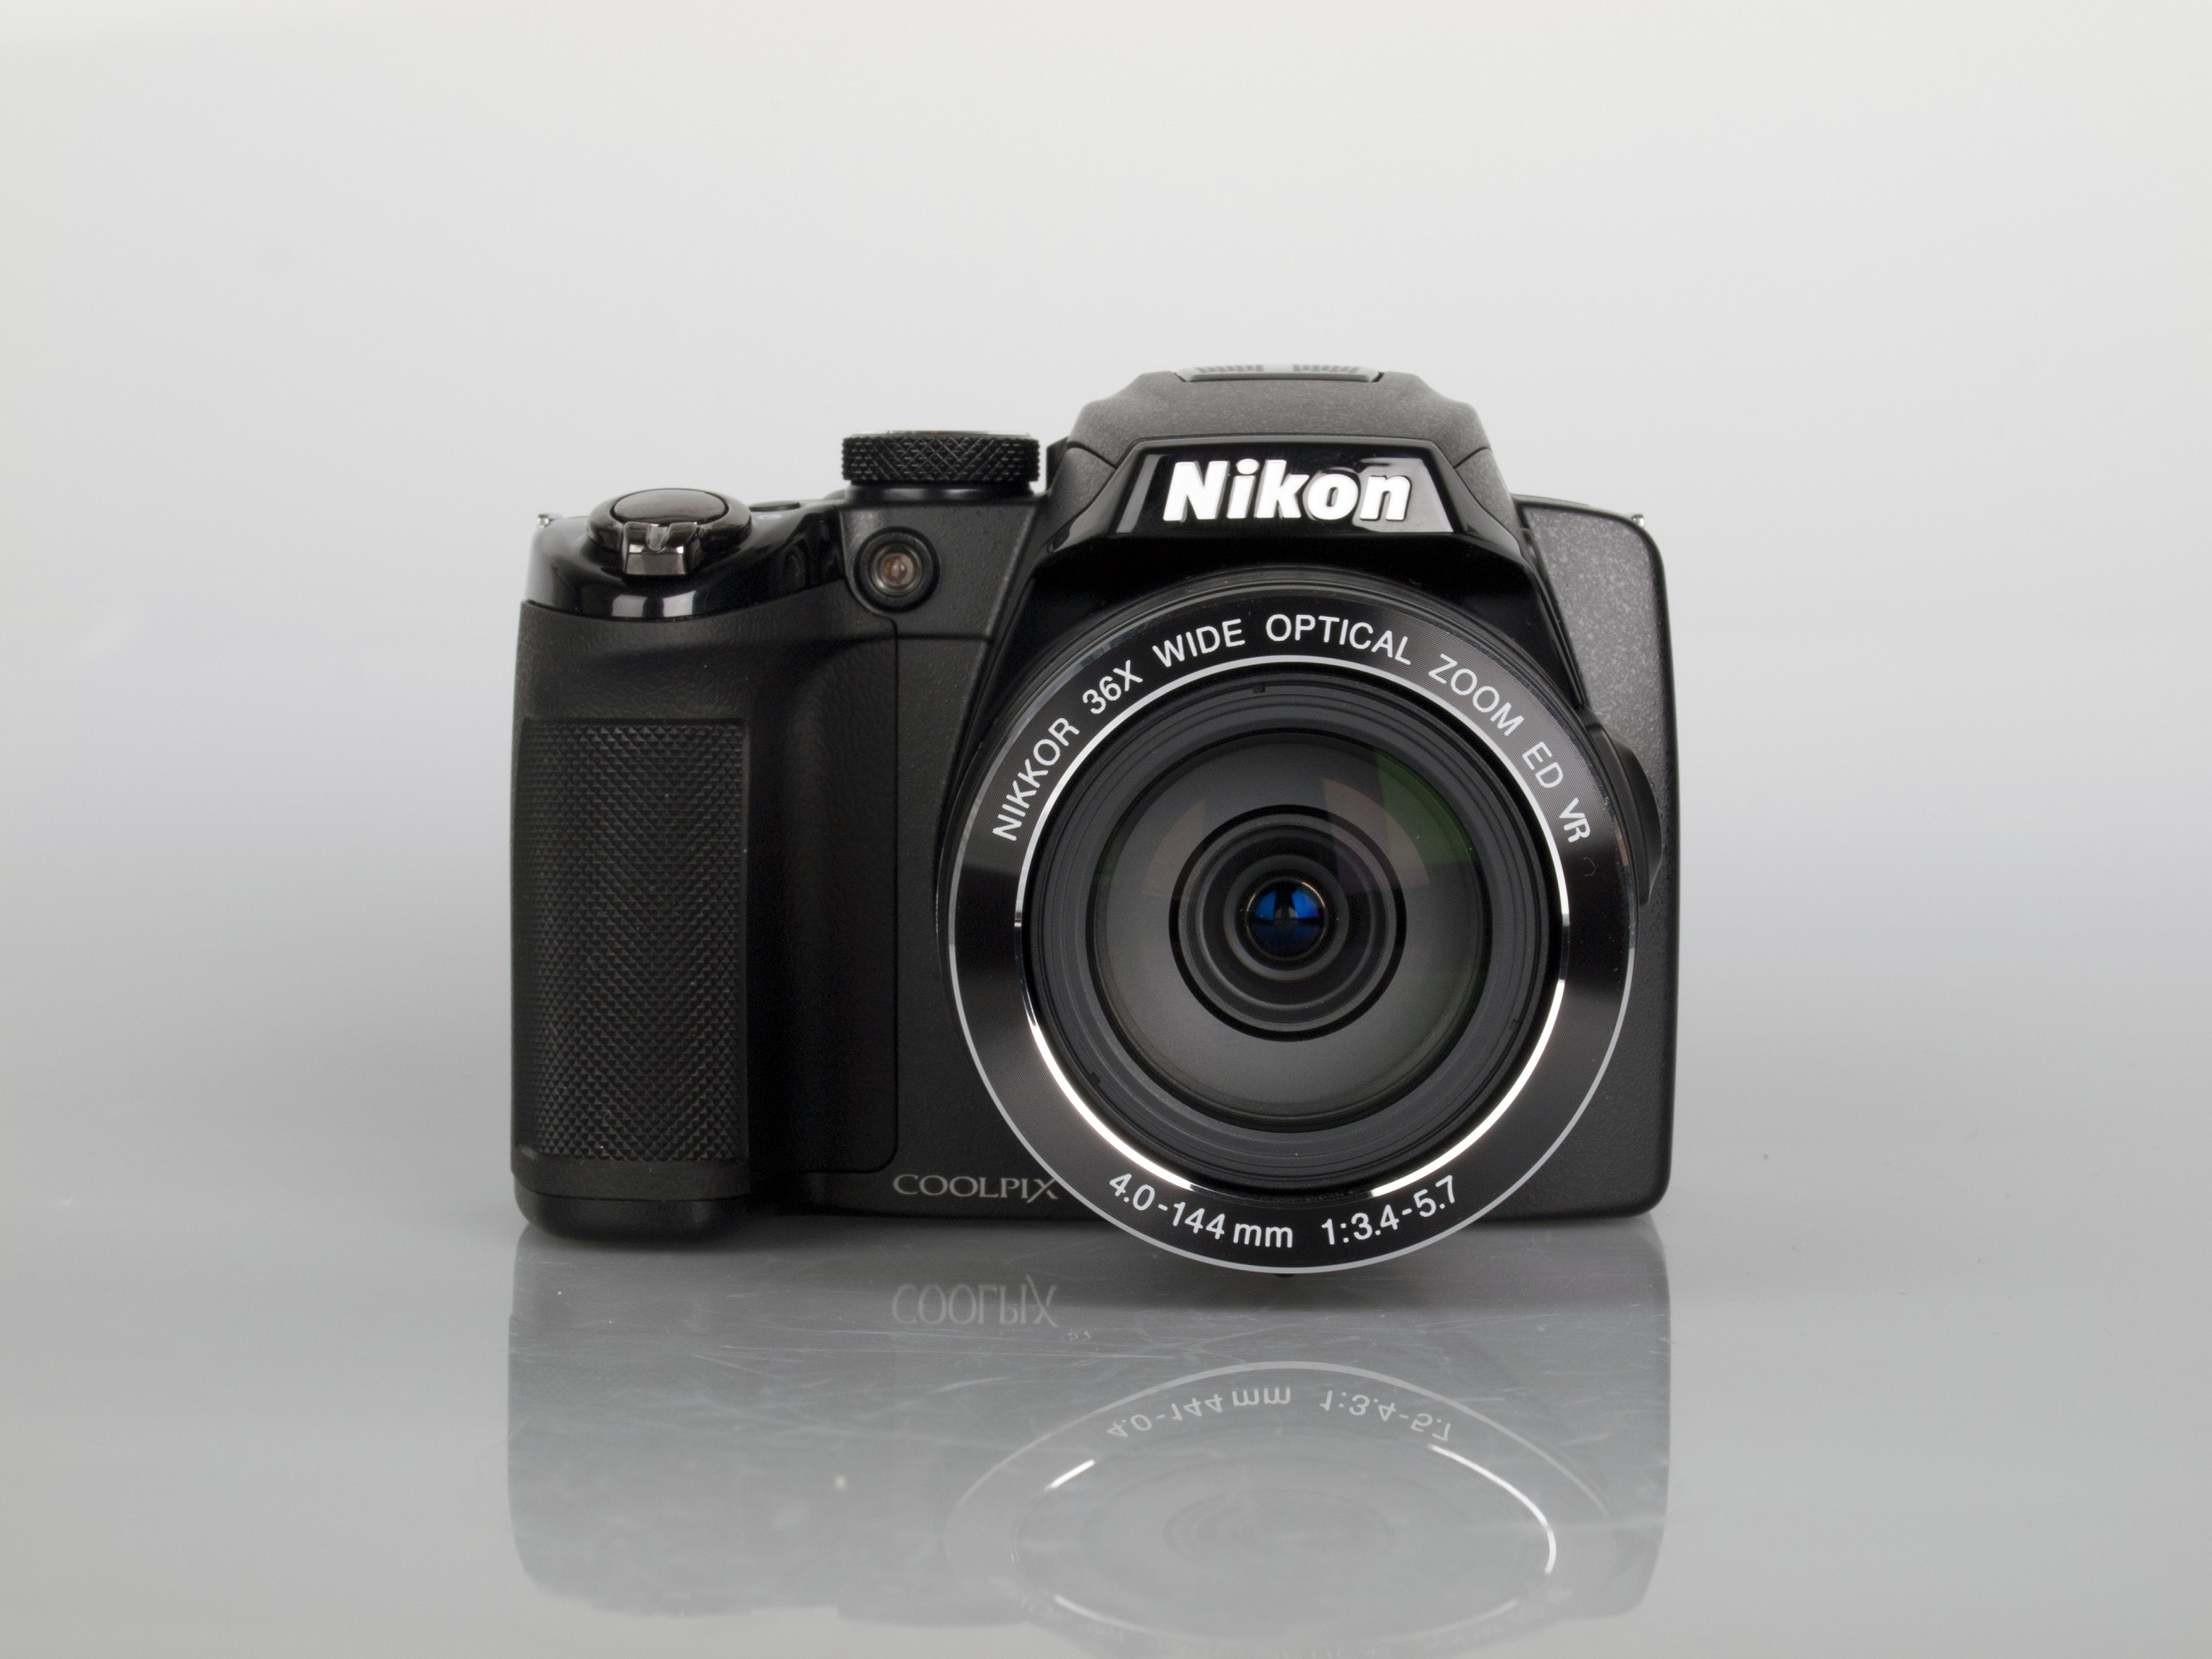 Nikon Coolpix P500 Digital Camera Review